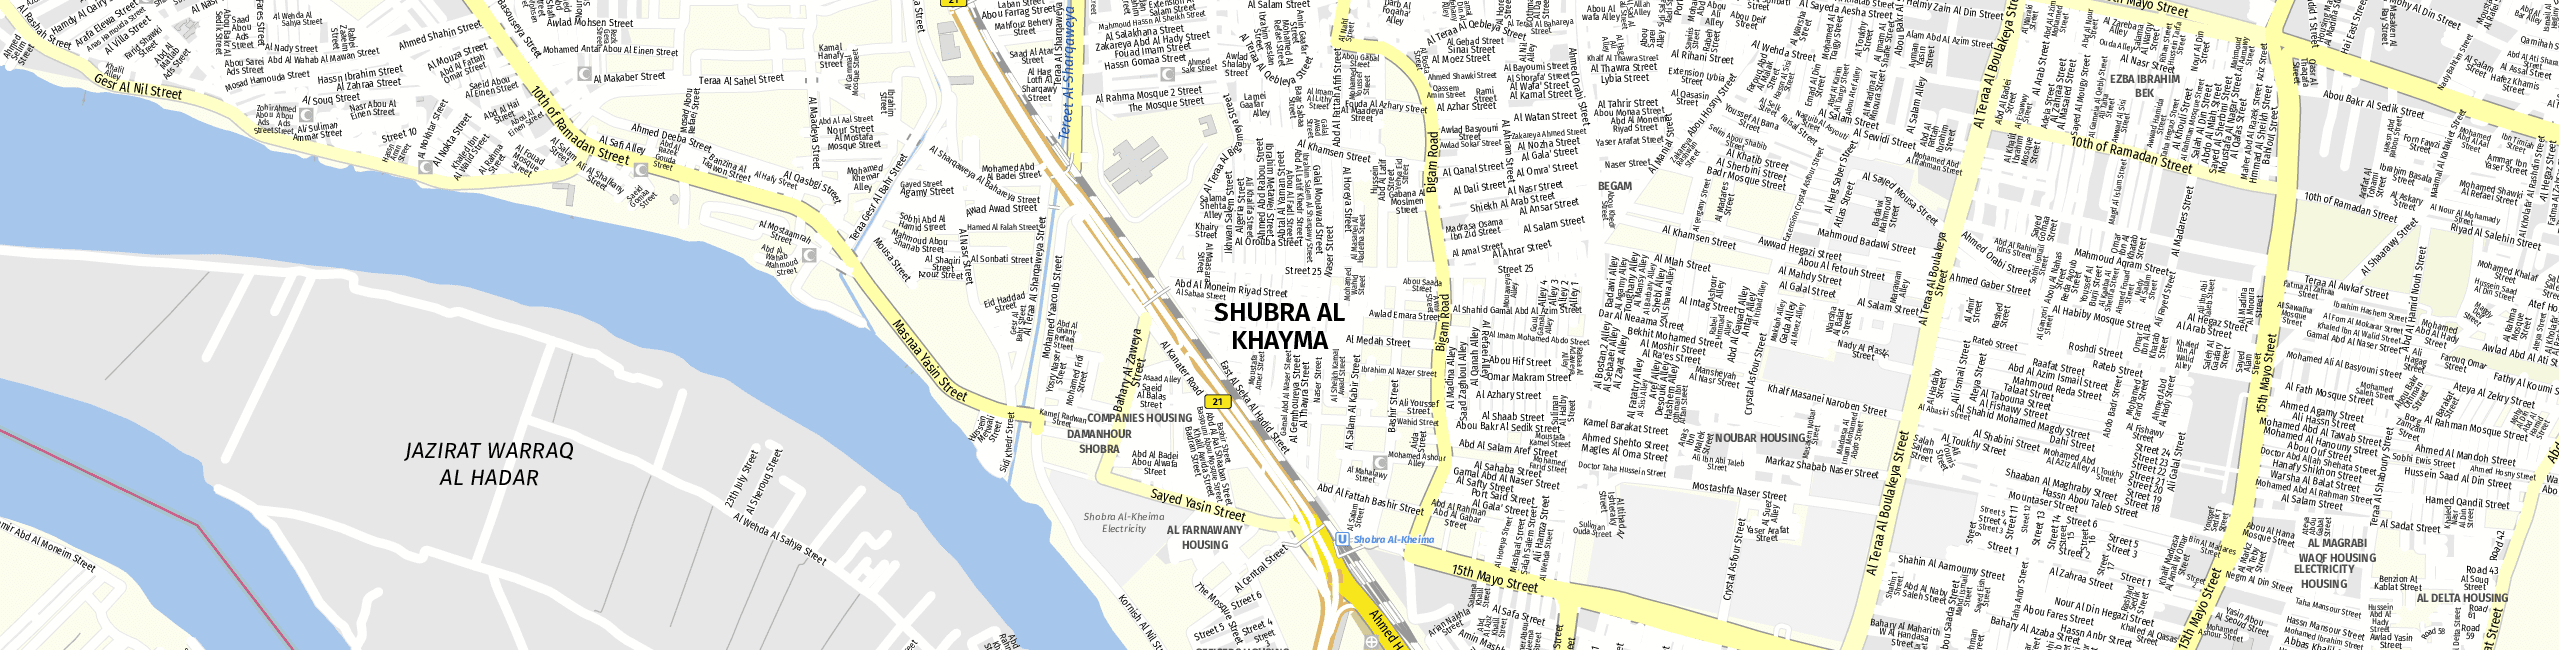 Stadtplan Shubra al Khayma zum Downloaden.